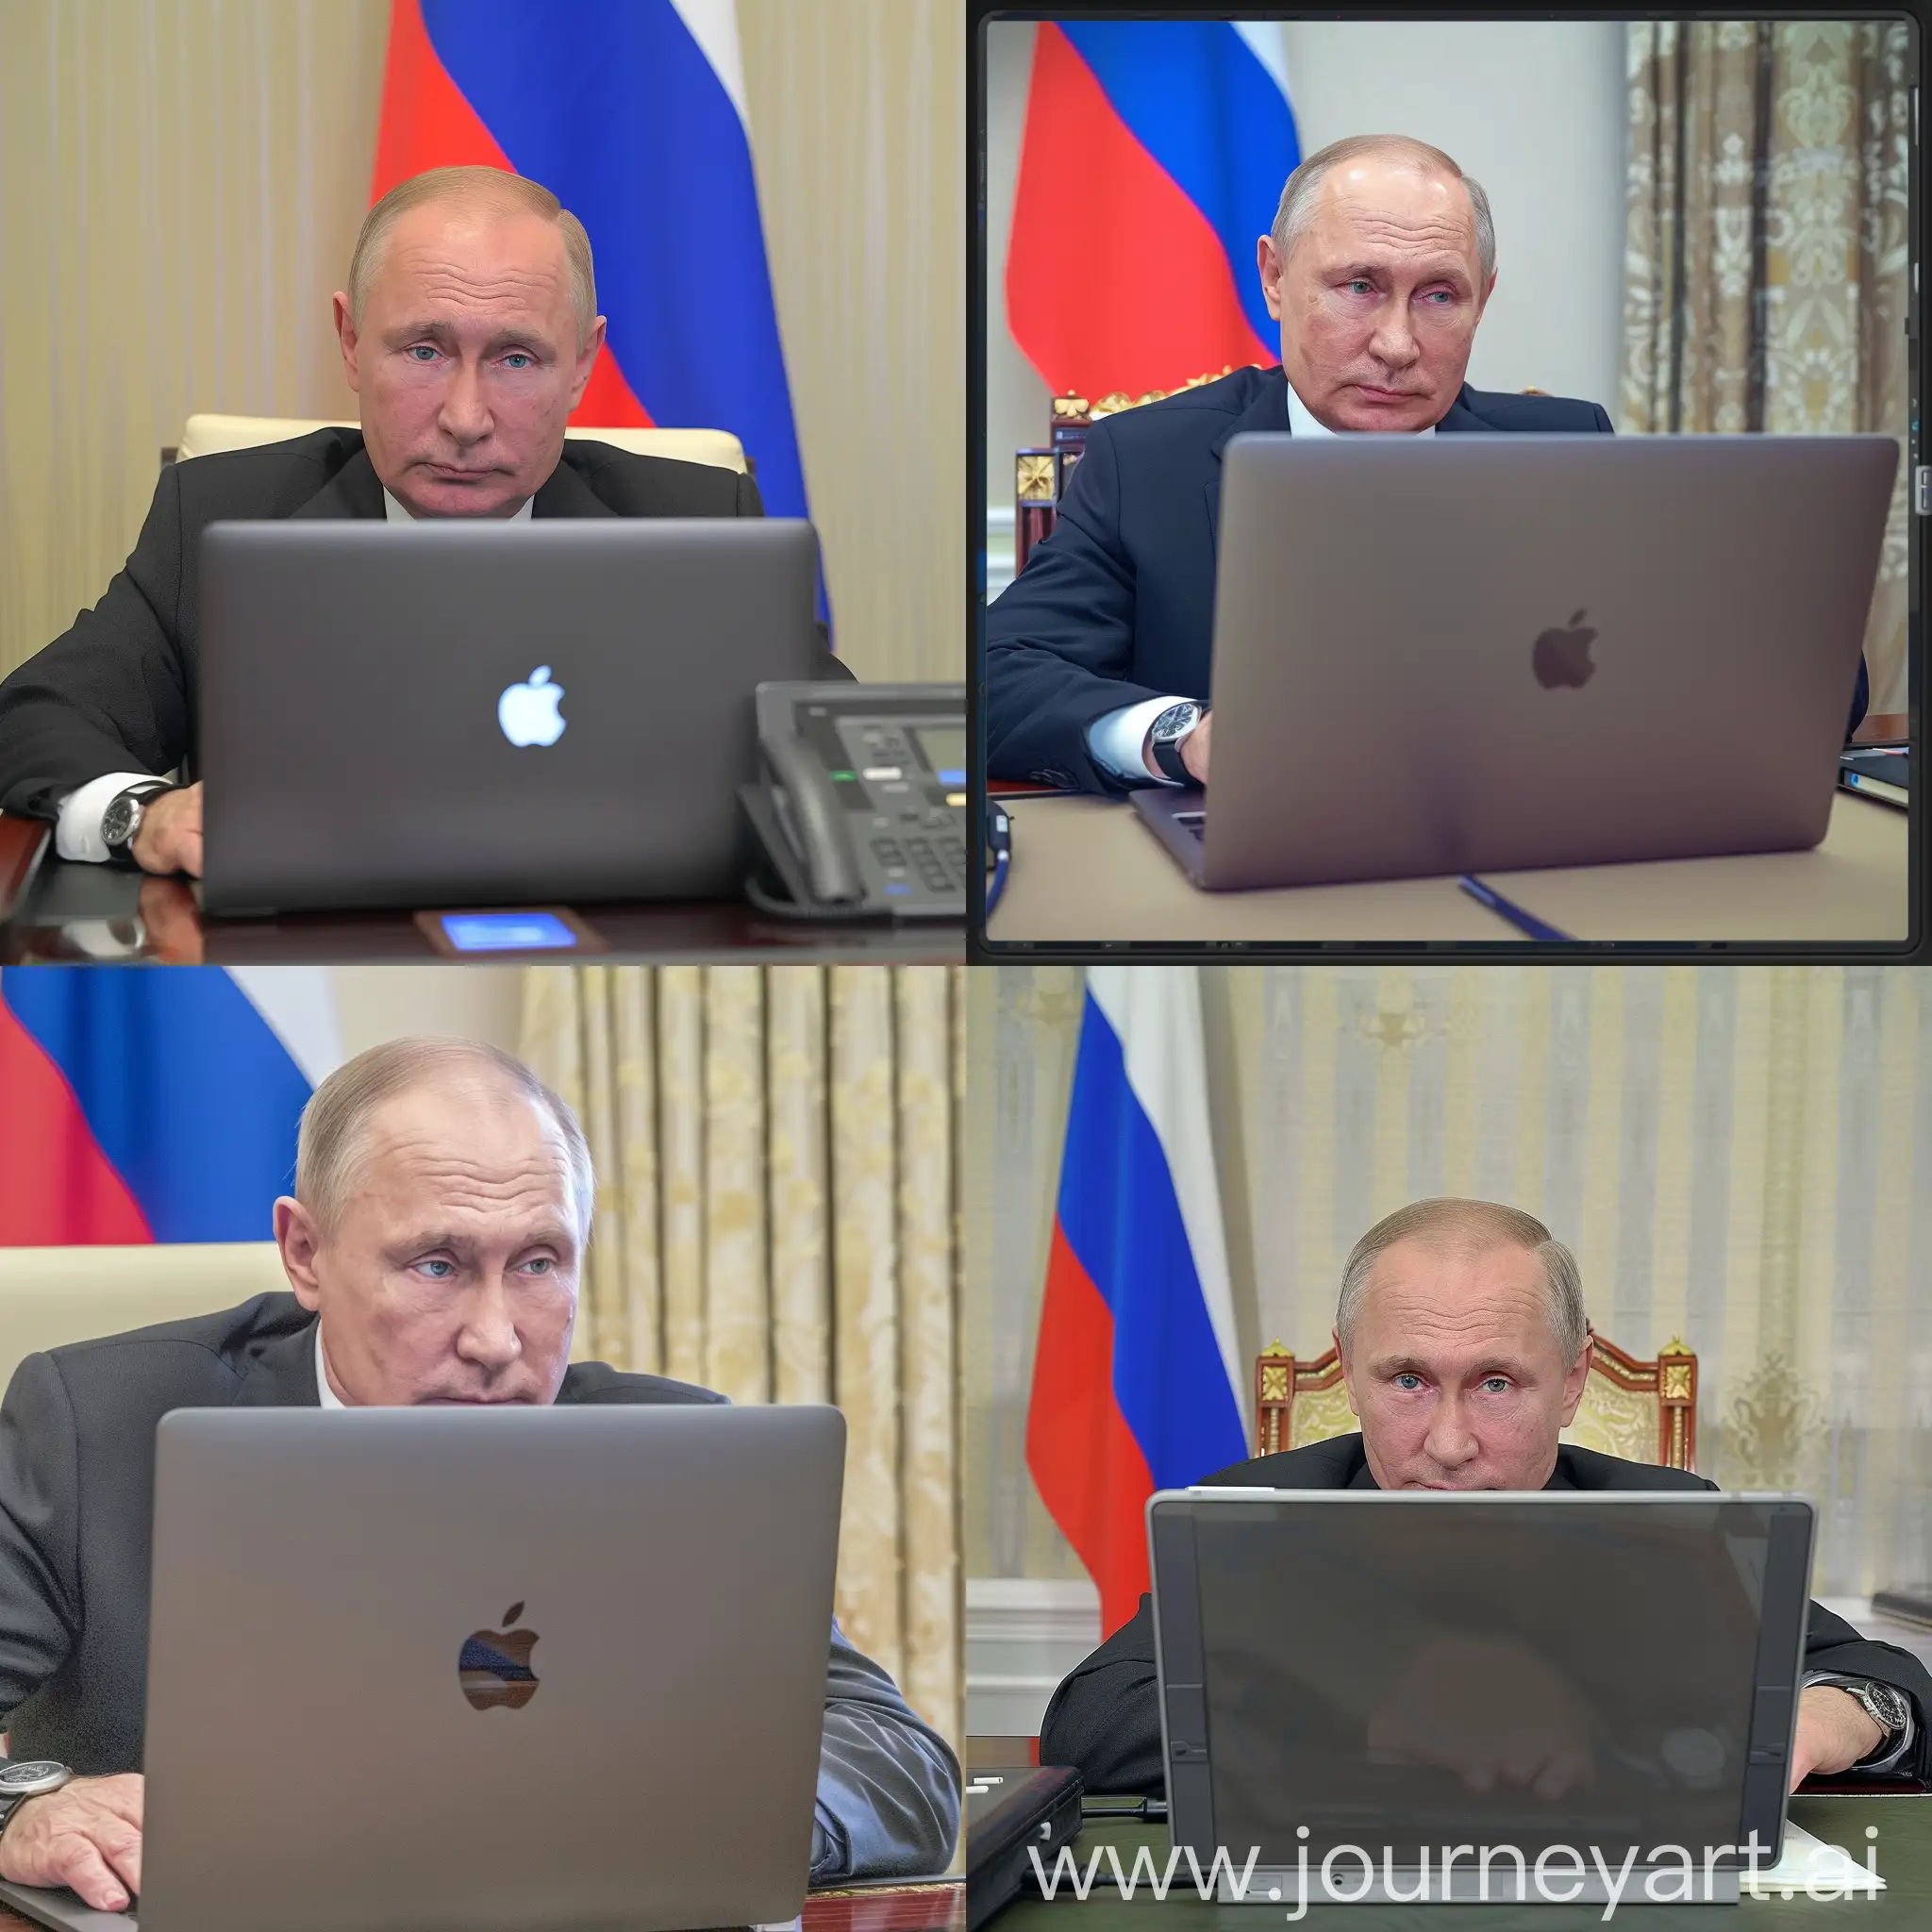 Владимир Путин, сидит за macbook, задний фон кабинет президента, флаг России, HDR, крупный план, детализация